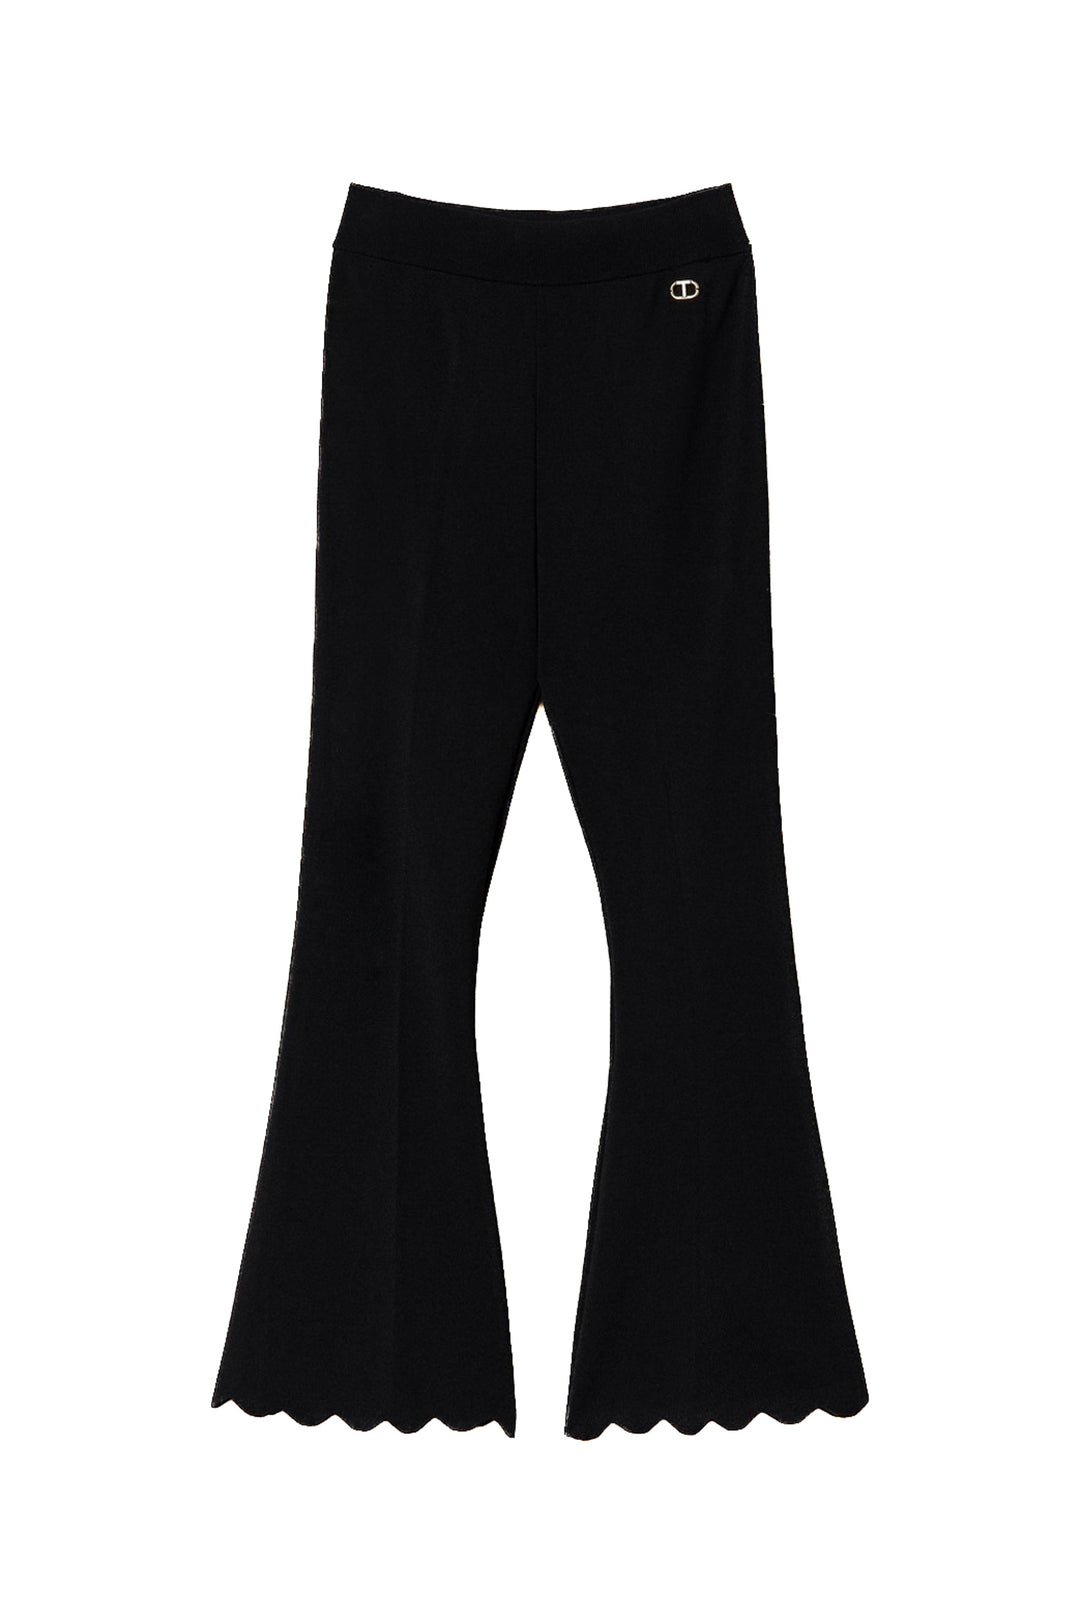 TWINSET Pantaloni flare neri in maglia con fondi smerlati - Mancinelli 1954